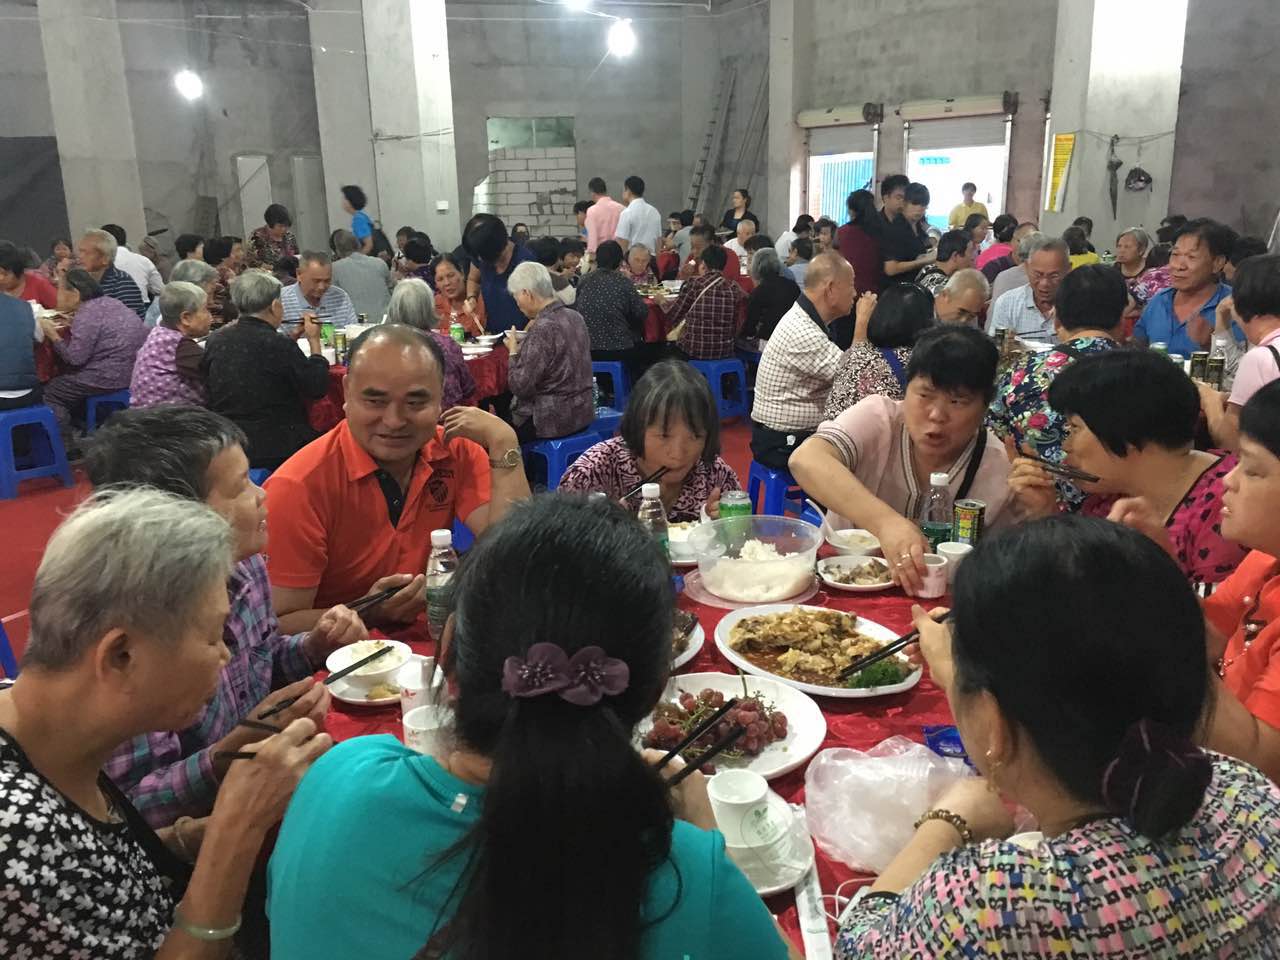 尊老、敬老是中华民族的传统美德，公司在农历九月九日重阳节邀请老人就餐同庆